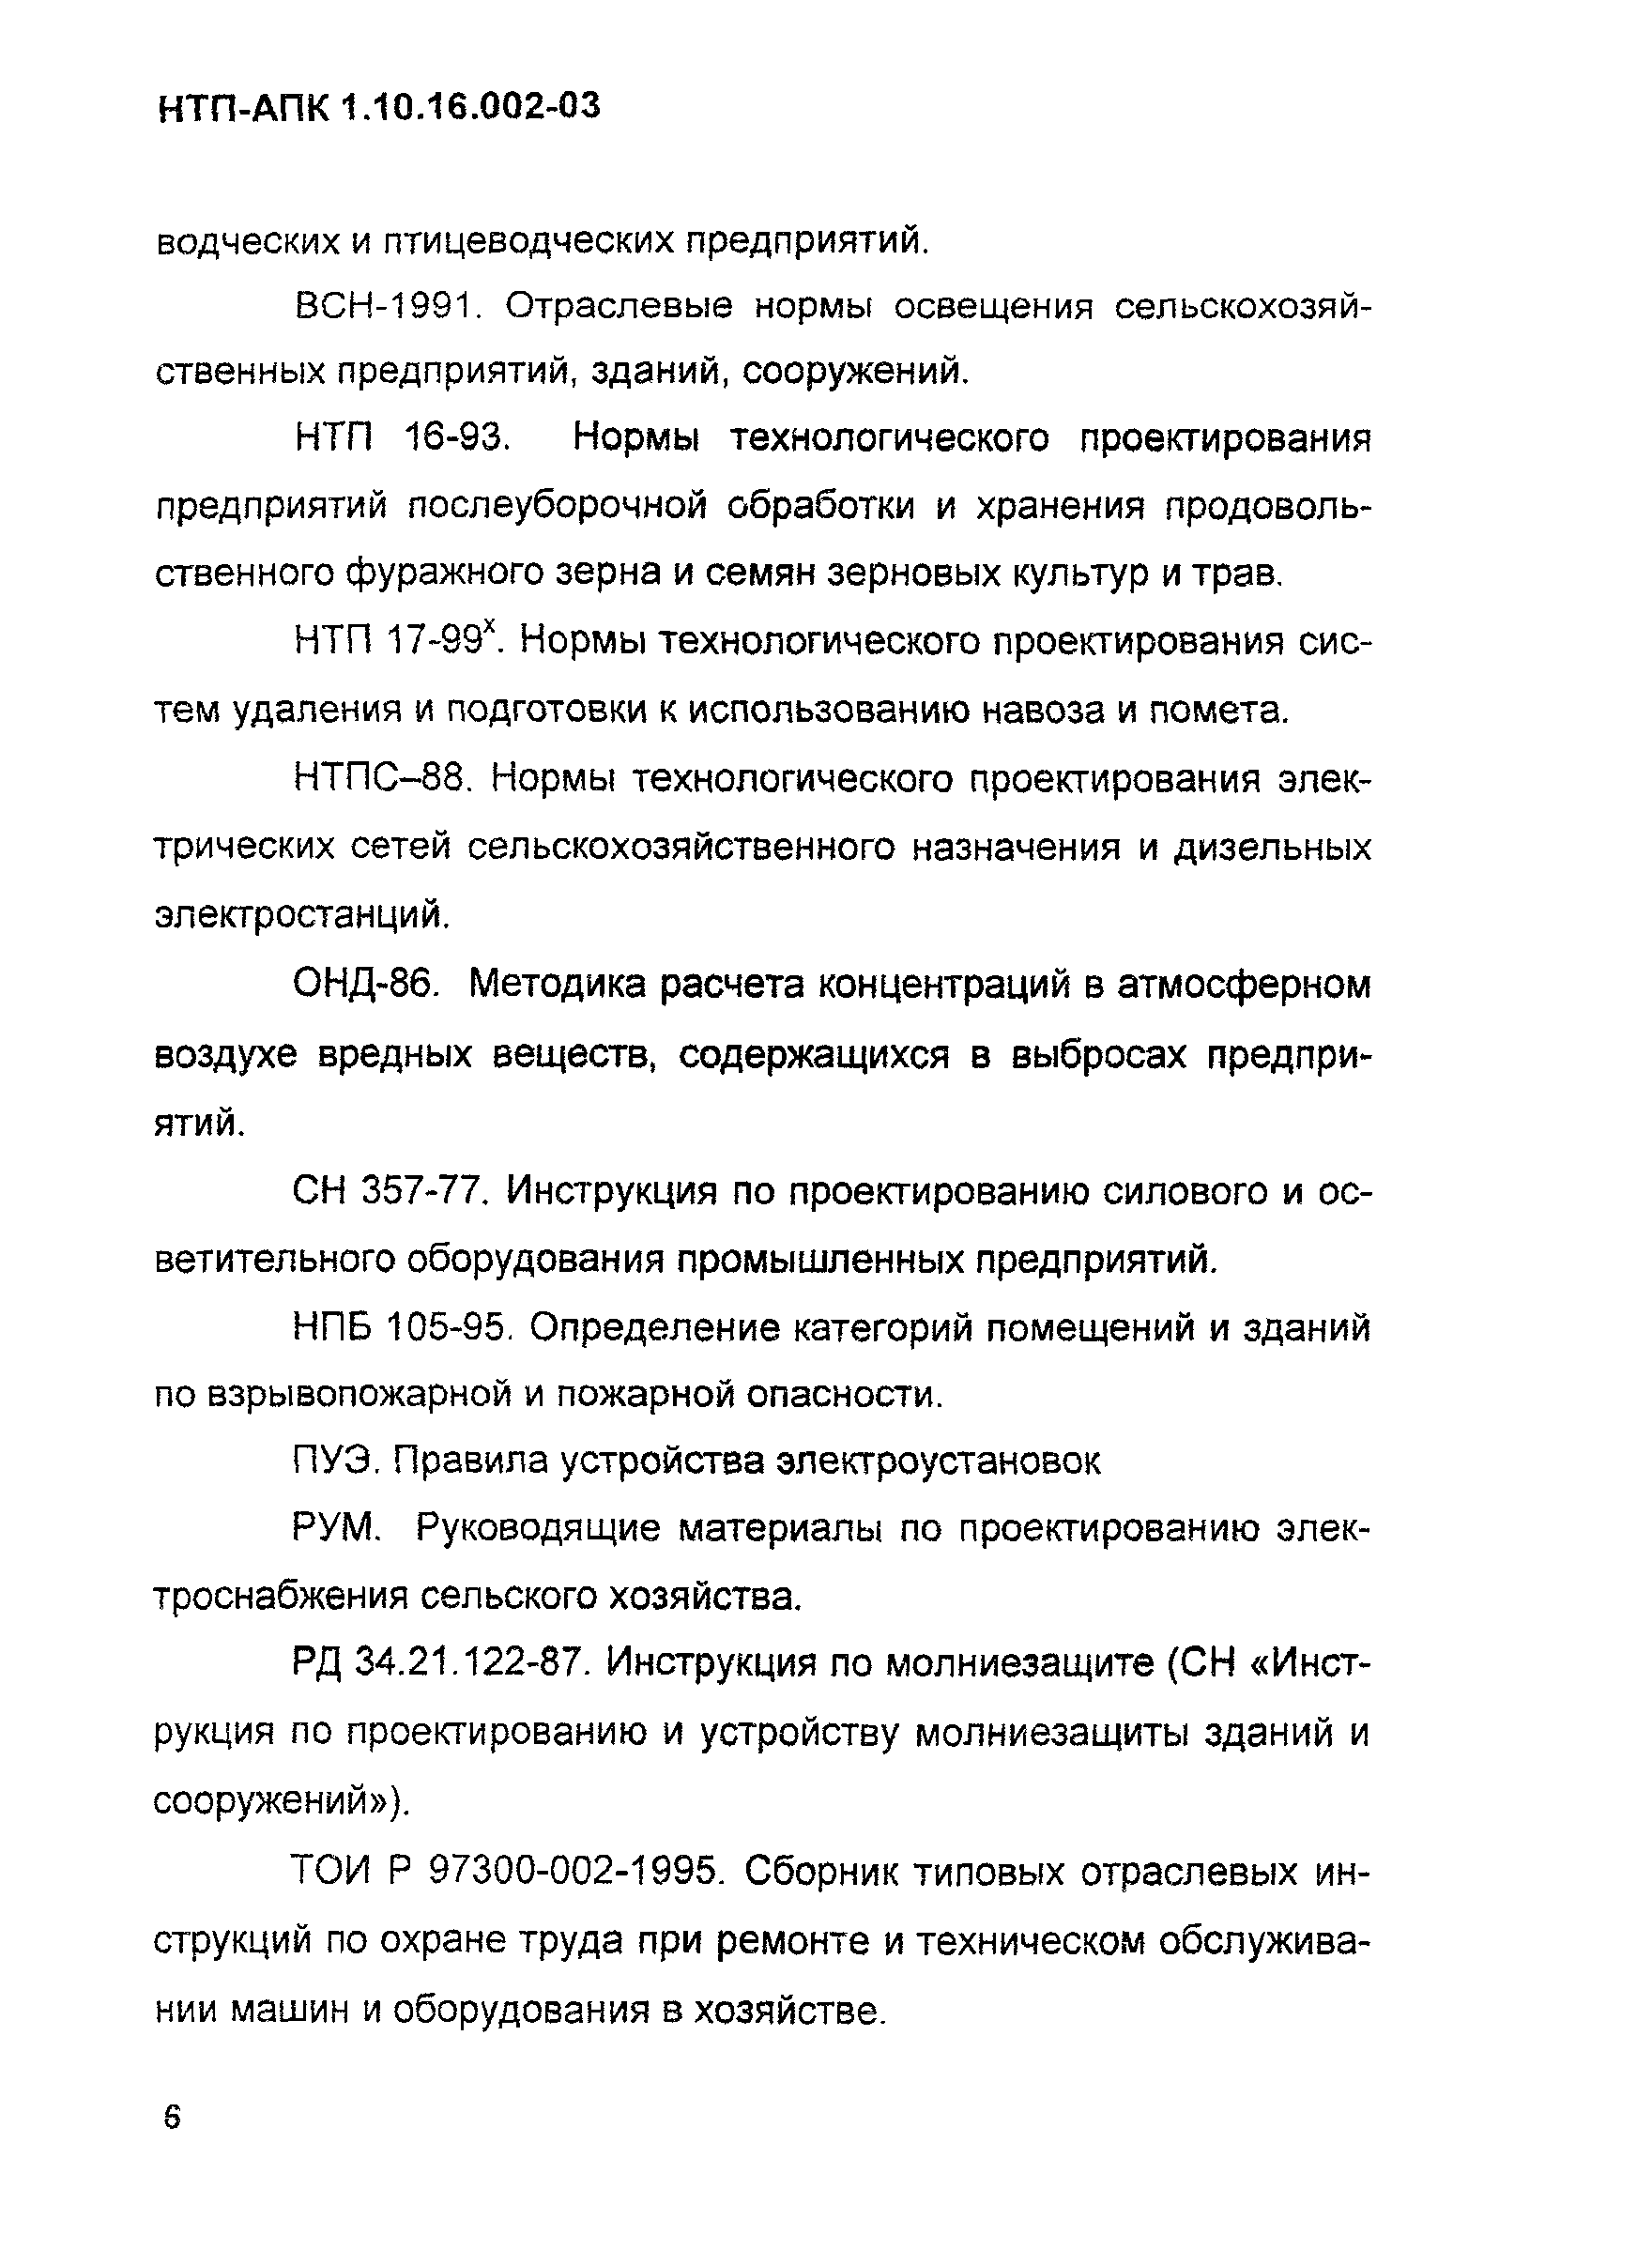 НТП-АПК 1.10.16.002-03